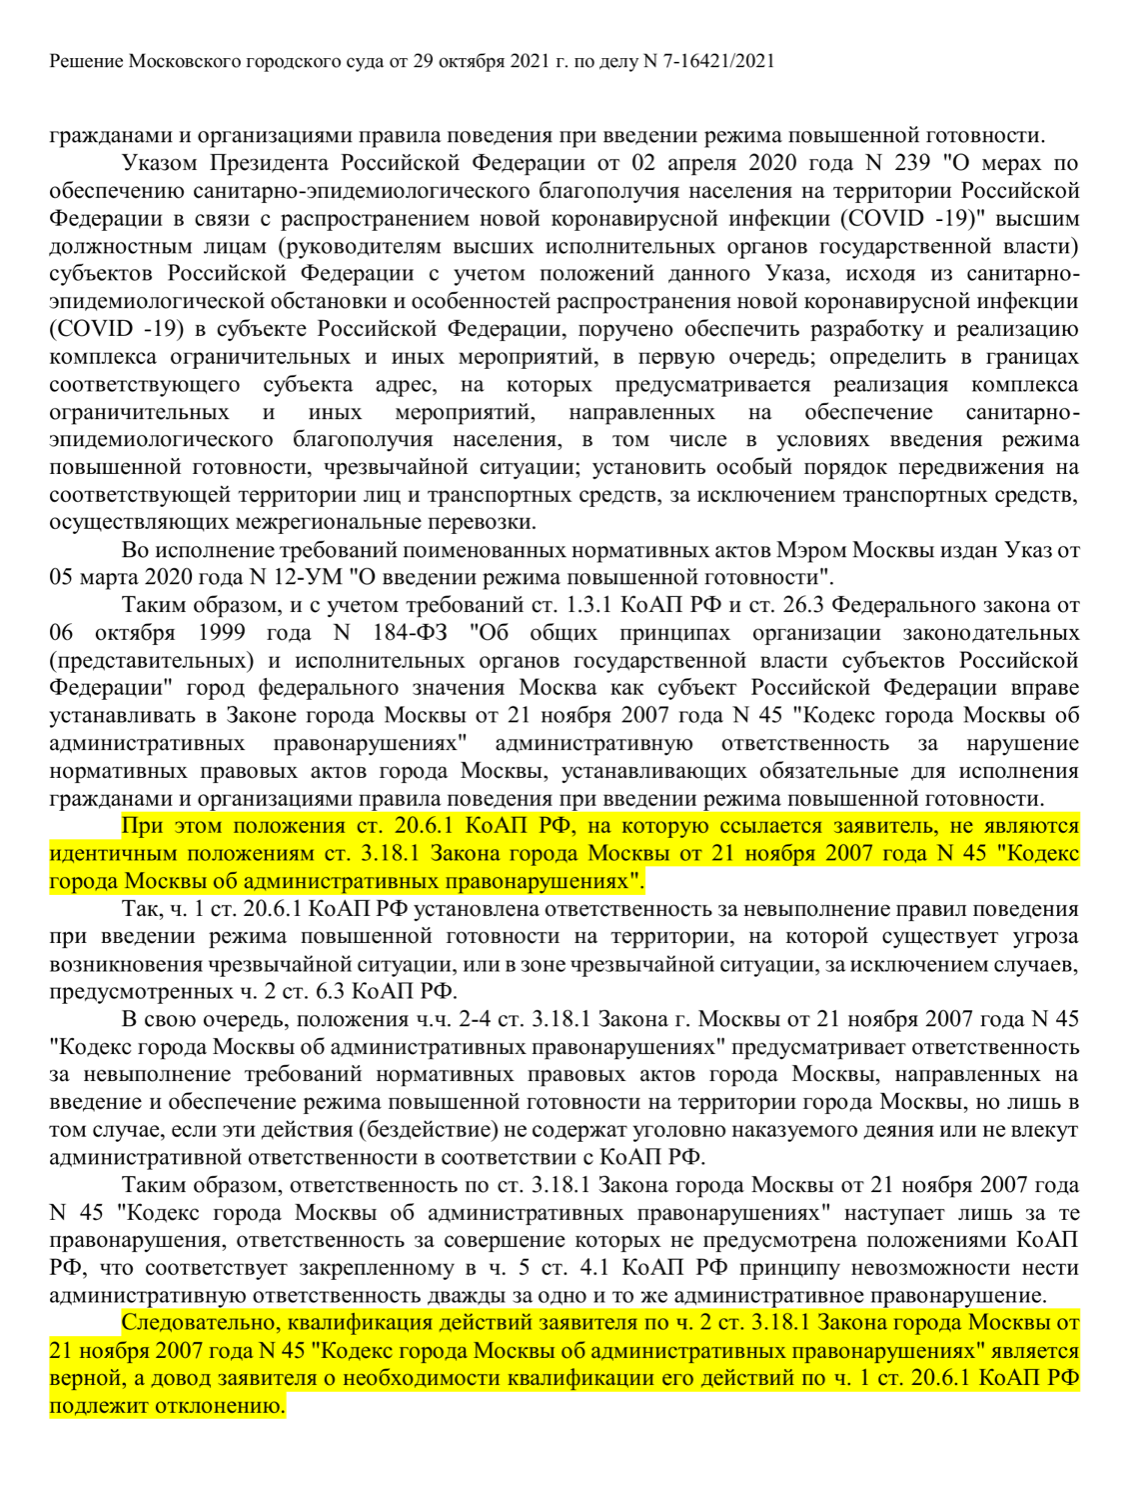 В другом деле Мосгорсуд не повторяет разъяснения Верховного суда, а дает свое толкование, но штраф по московскому законодательству считает верным